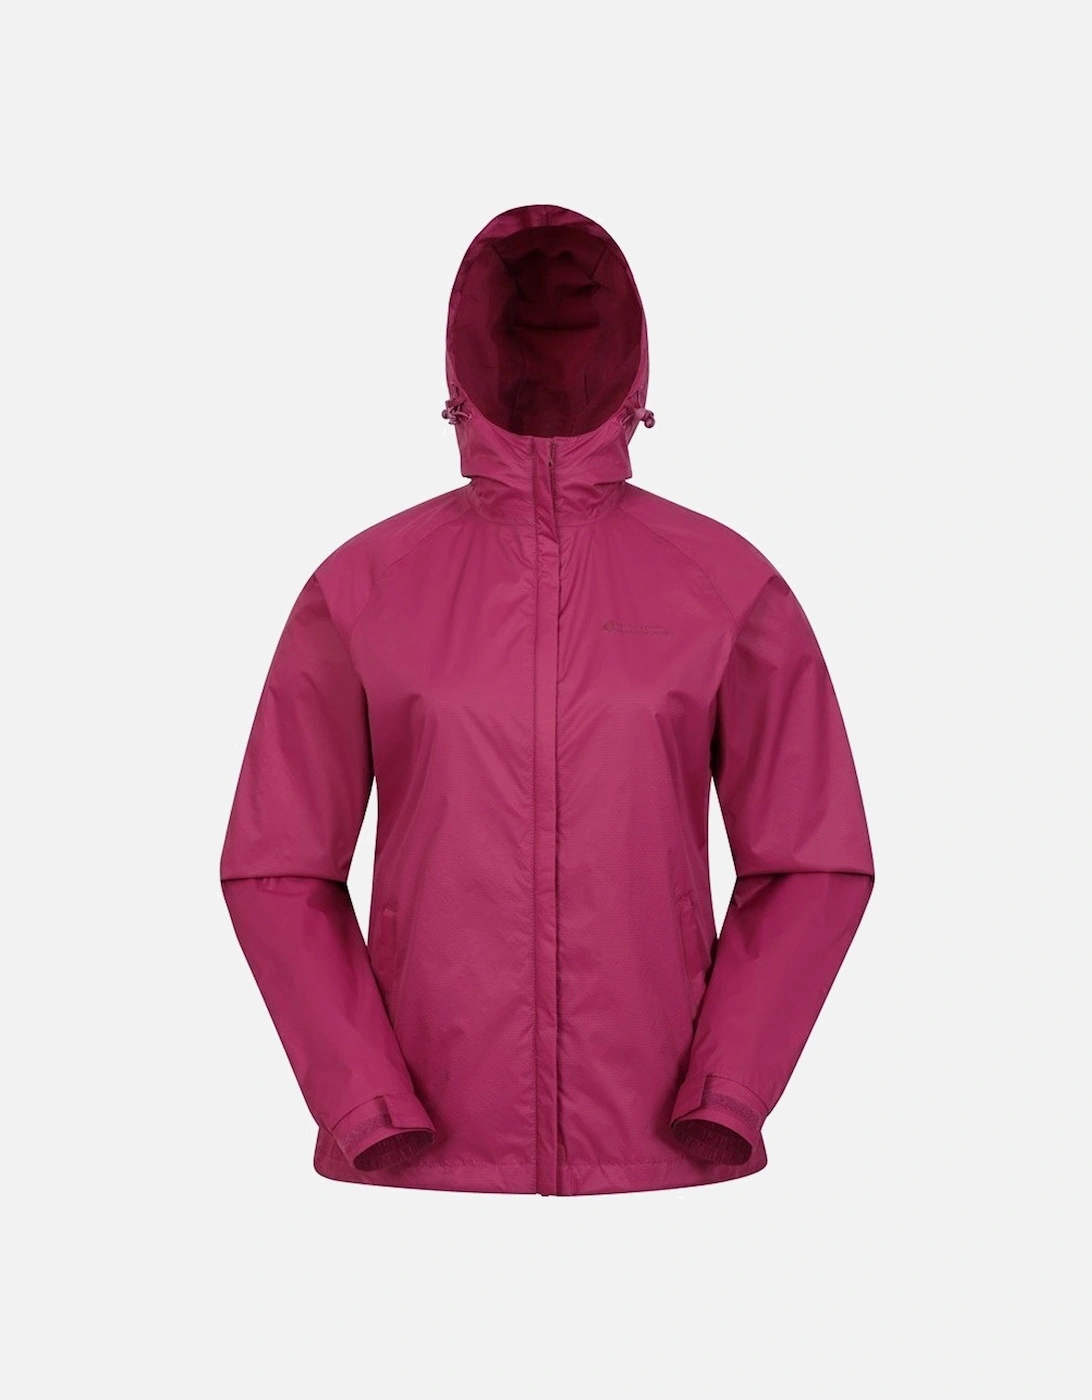 Womens/Ladies Torrent Waterproof Jacket, 2 of 1